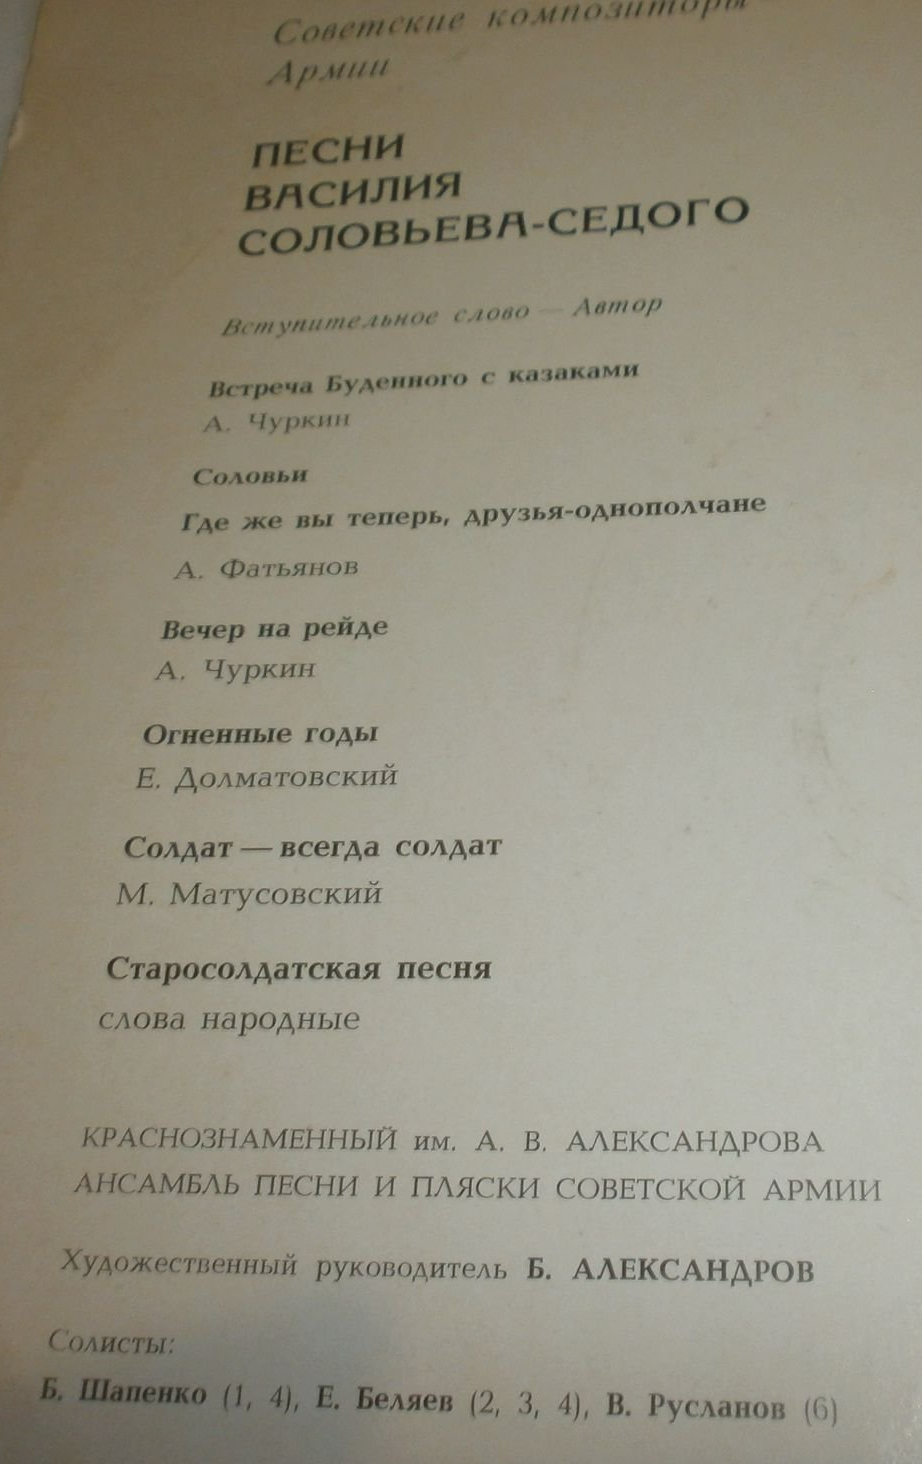 Песни В. П. СОЛОВЬЕВА-СЕДОГО. Из цикла "Советские композиторы - Армии"